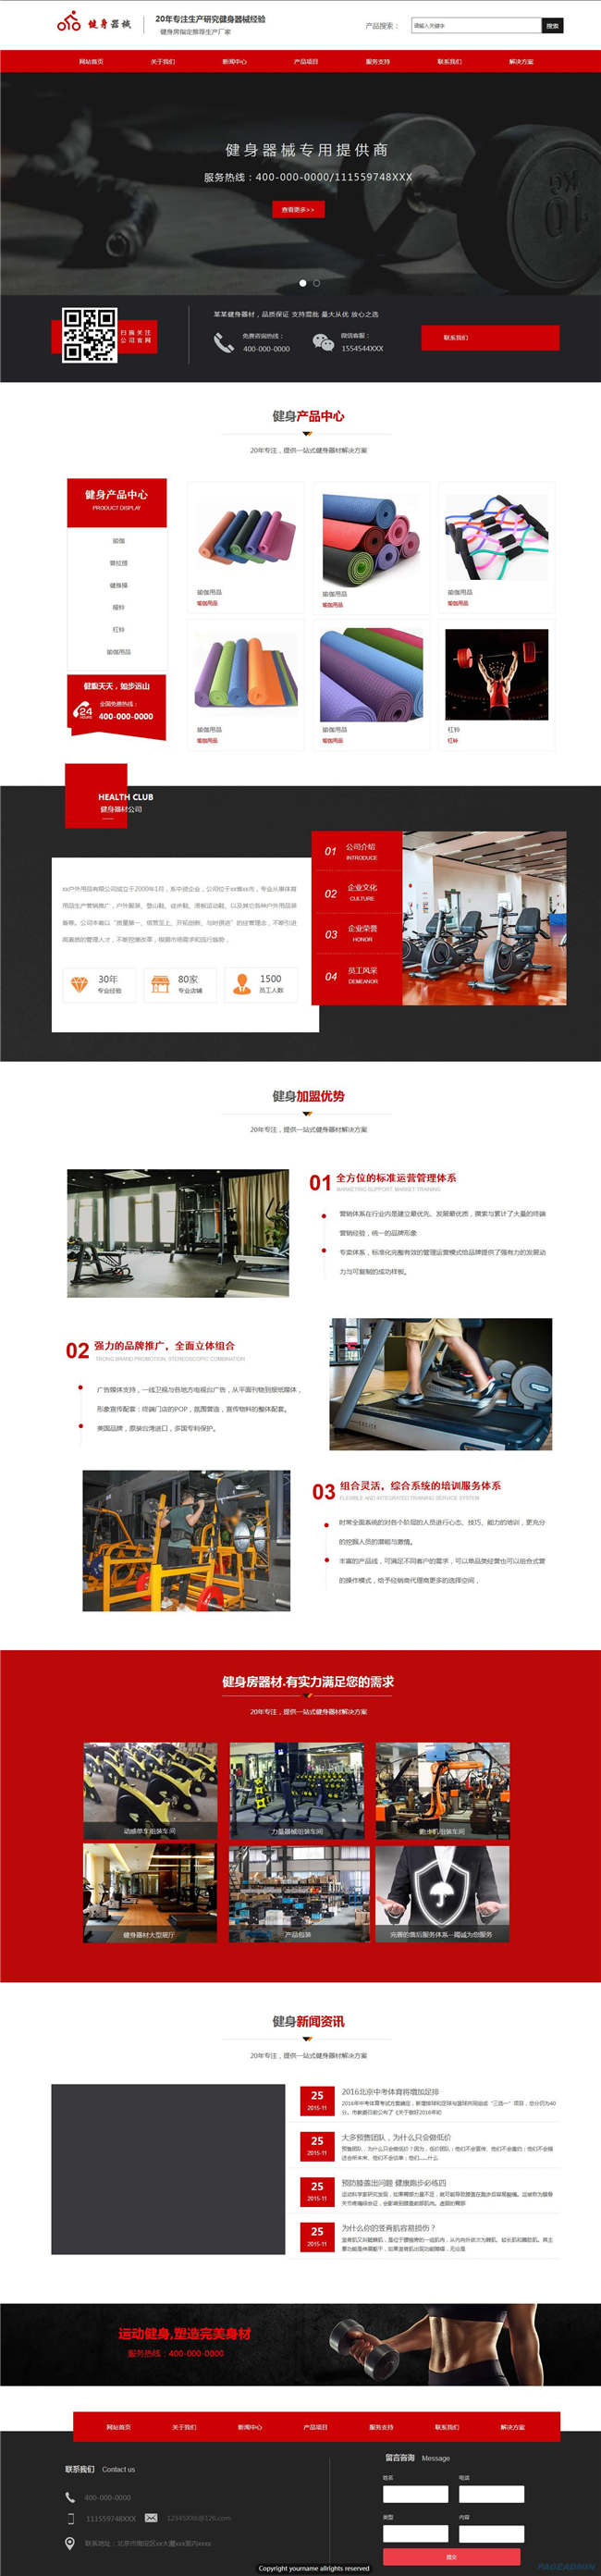 健身器材公司户外健身娱乐休闲体育用品运动器材网站主题模板下载演示图